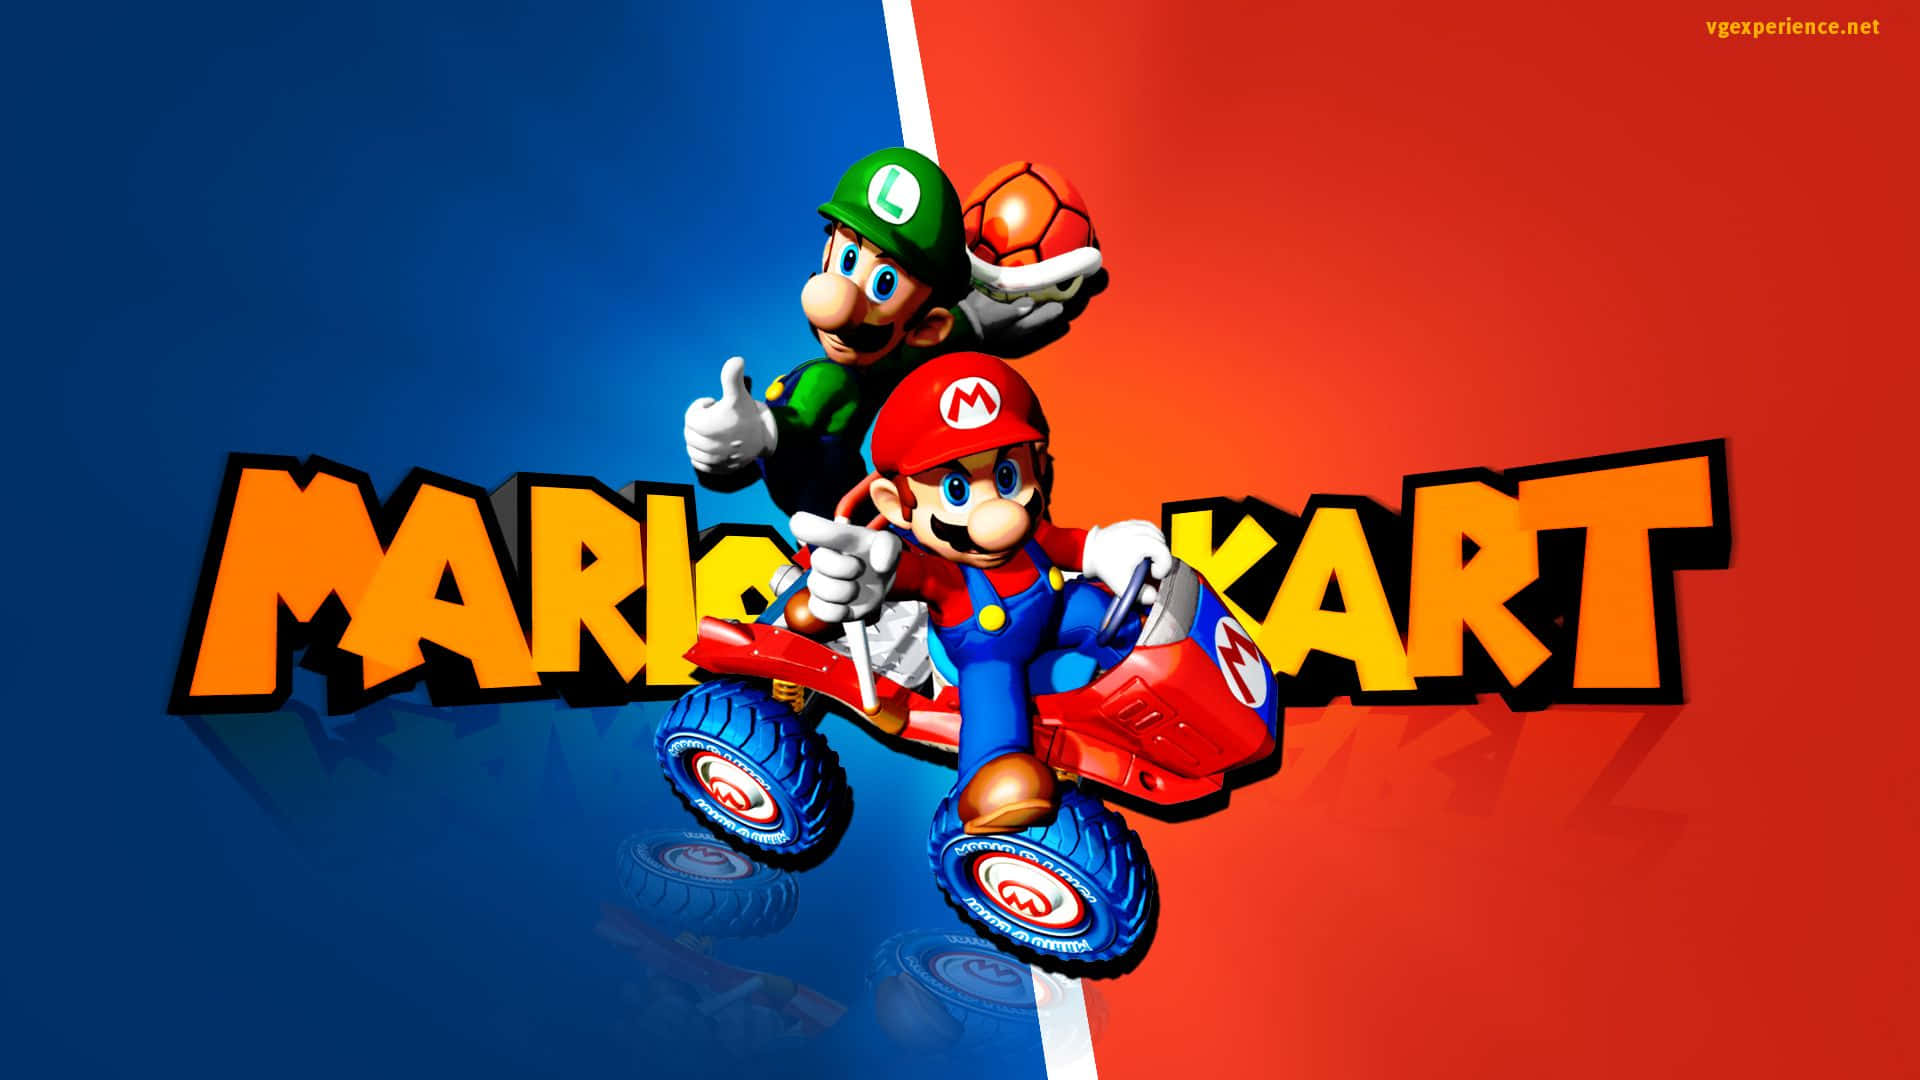 Juntese À Diversão Das Corridas De Gokart Com Mario Kart!